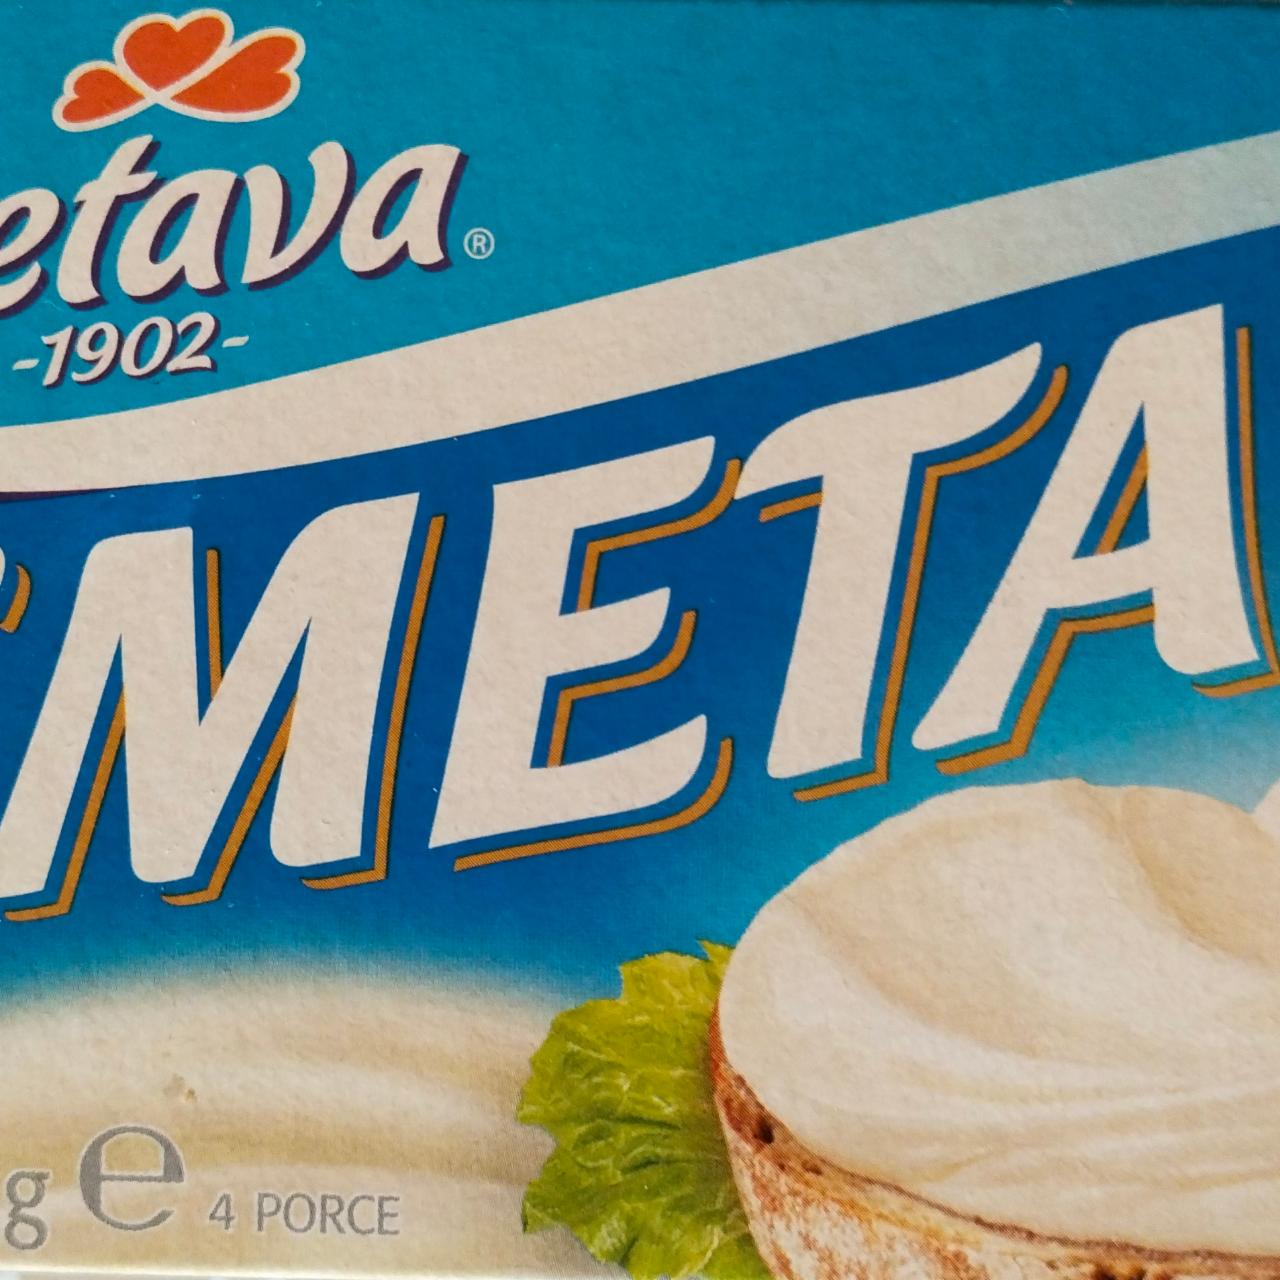 Фото - плавленый сыр smetanito Želetava